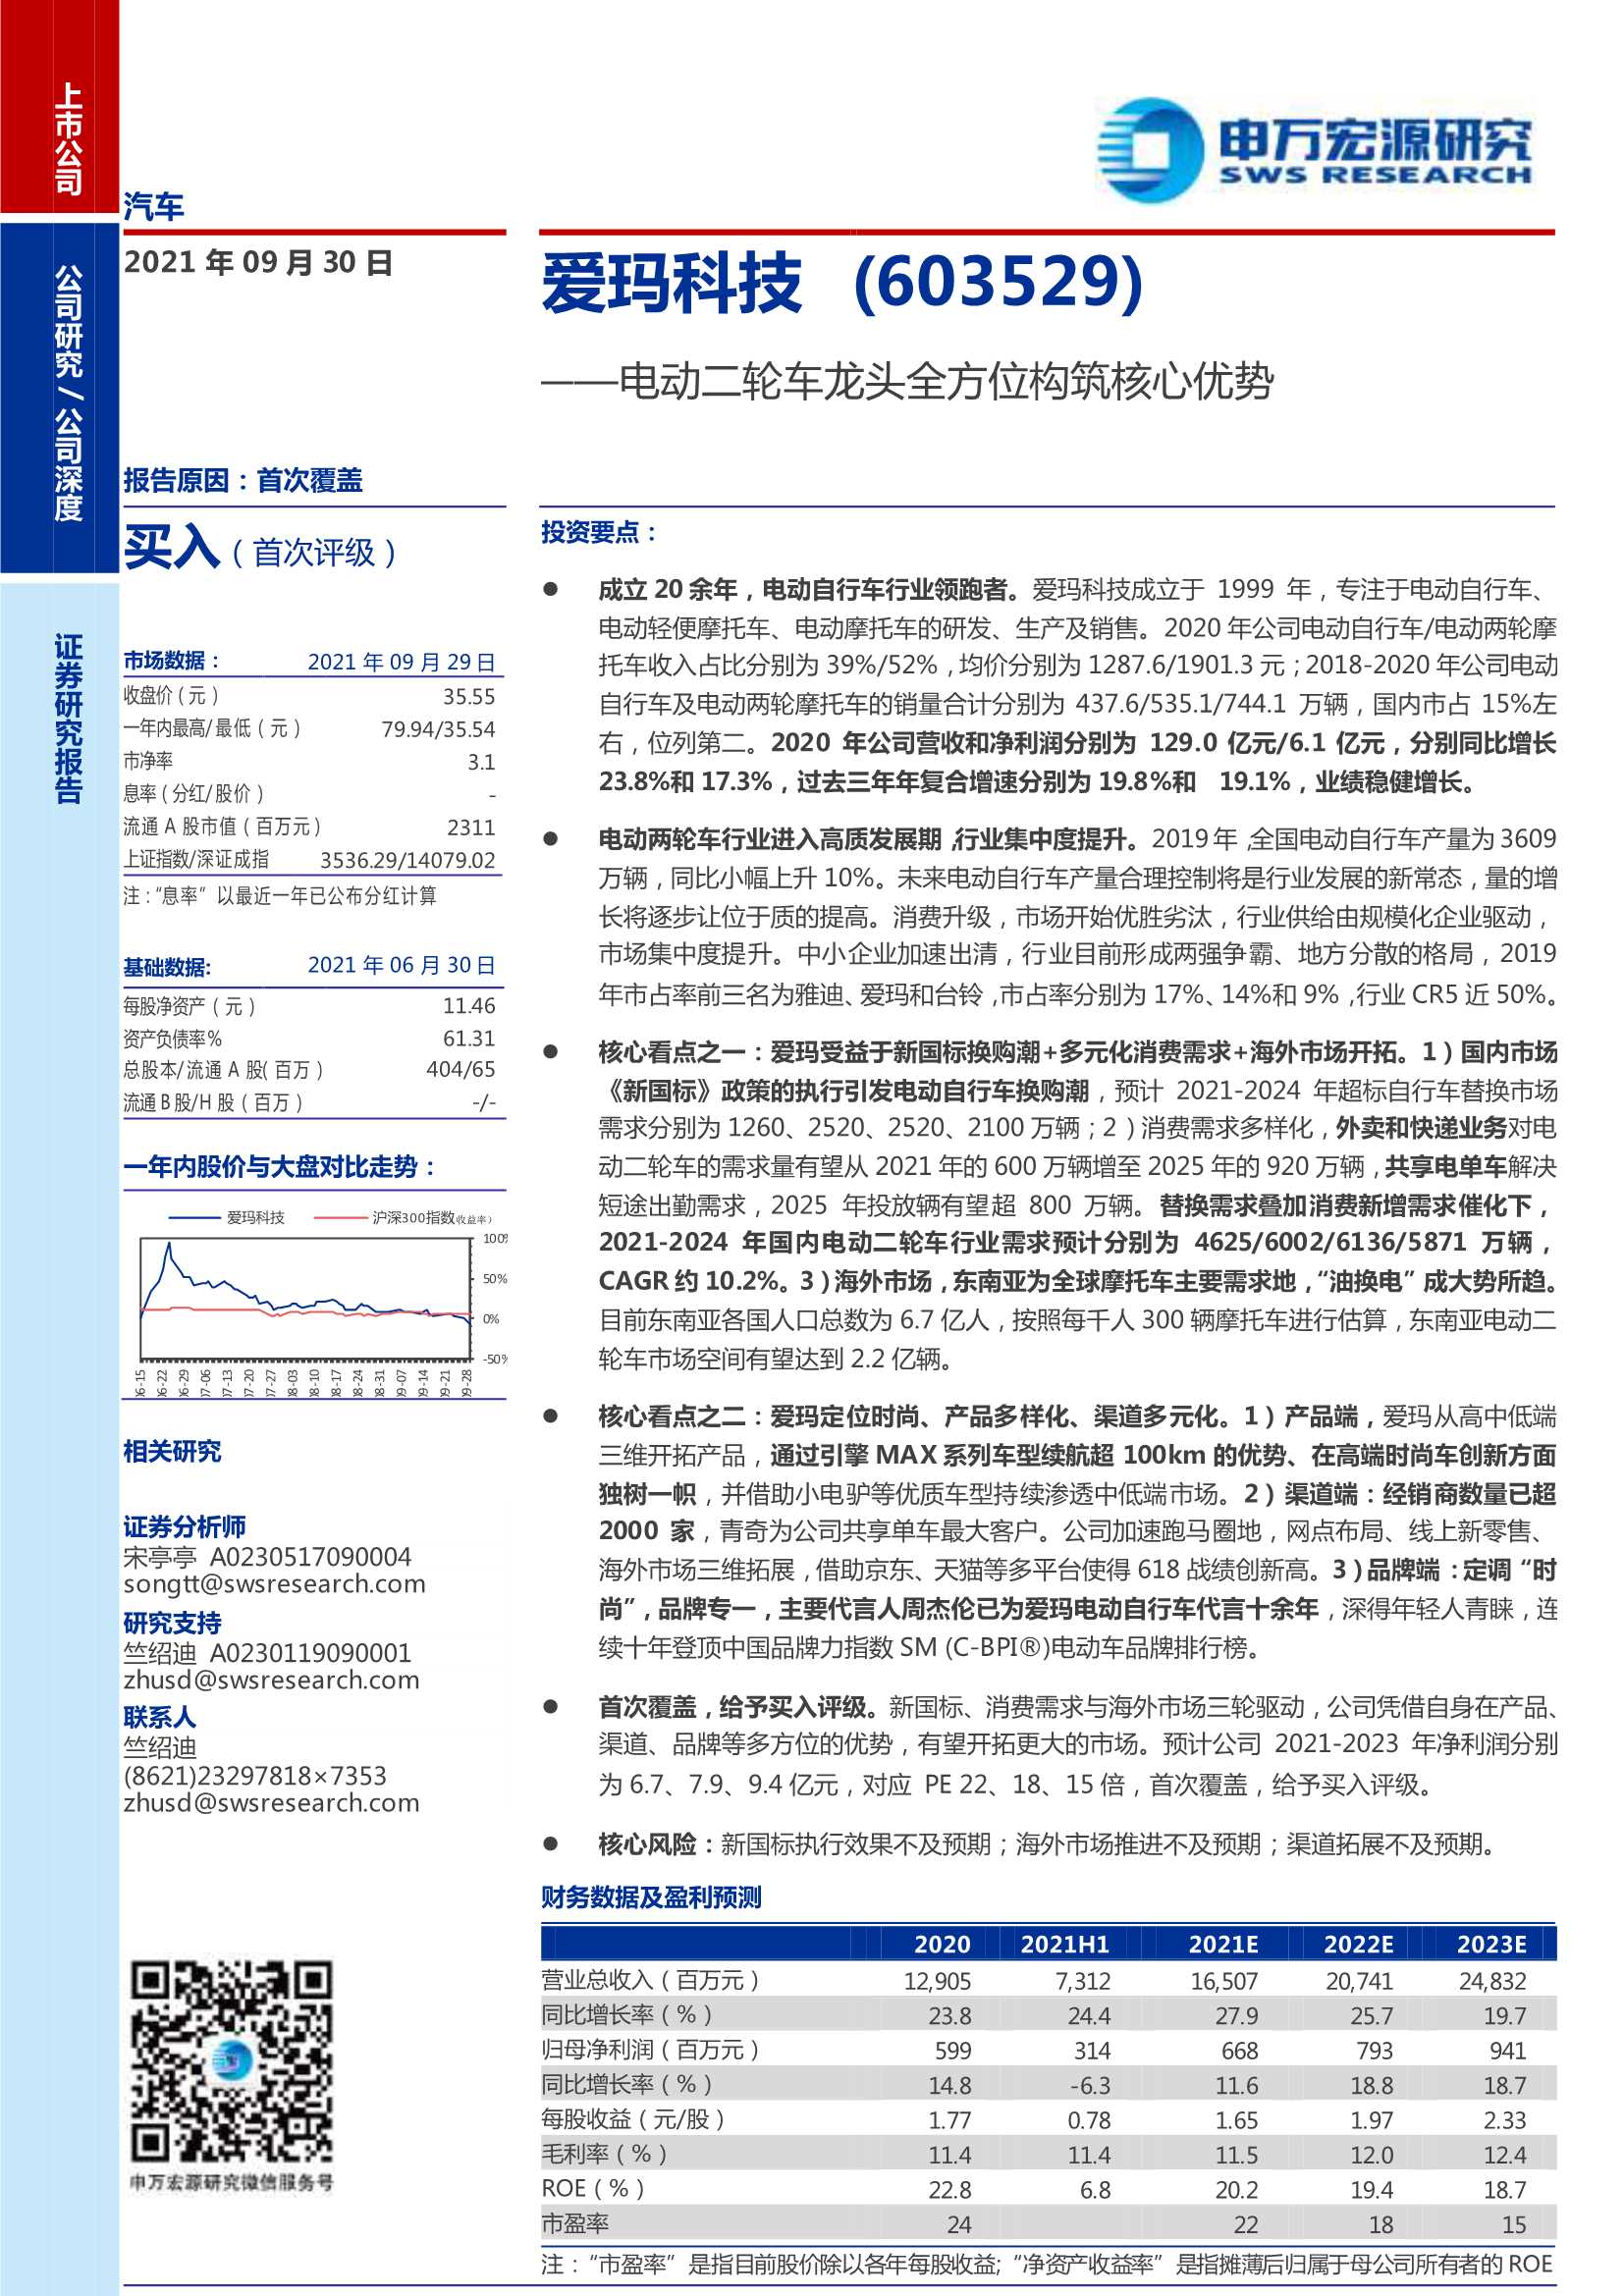 申万宏源-爱玛科技-603529-电动二轮车龙头全方位构筑核心优势-20210930-38页